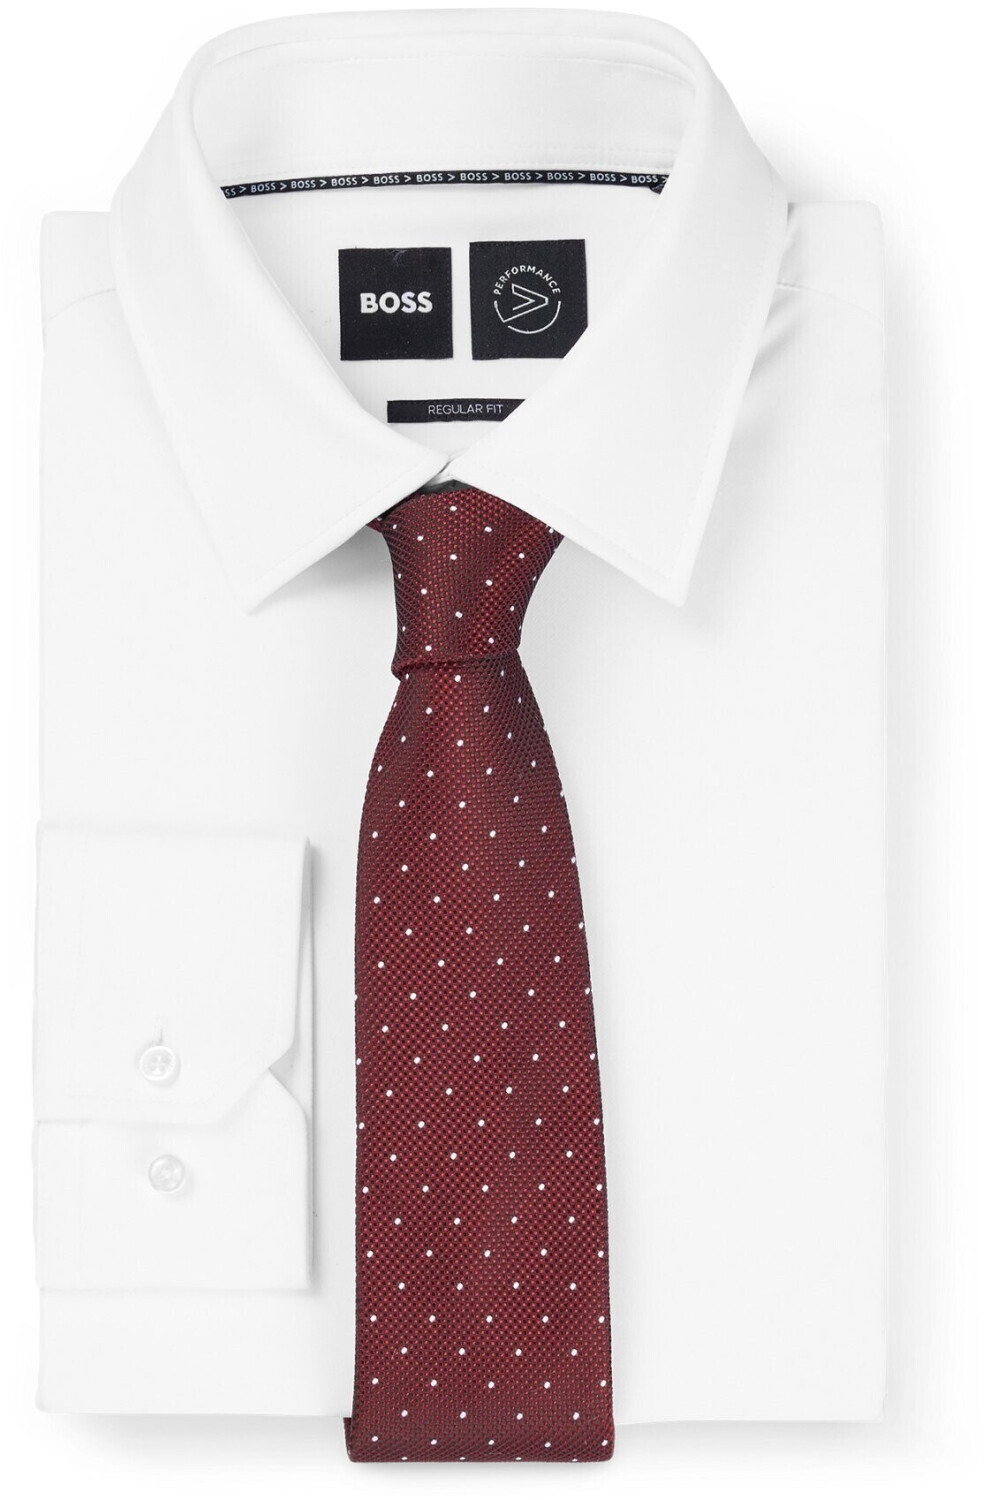 Hugo Boss Gepunktete Krawatte aus Seiden-Mix - Style H-TIE 7,5 CM-222  (50498960) dunkelrot ab 29,99 € | Preisvergleich bei